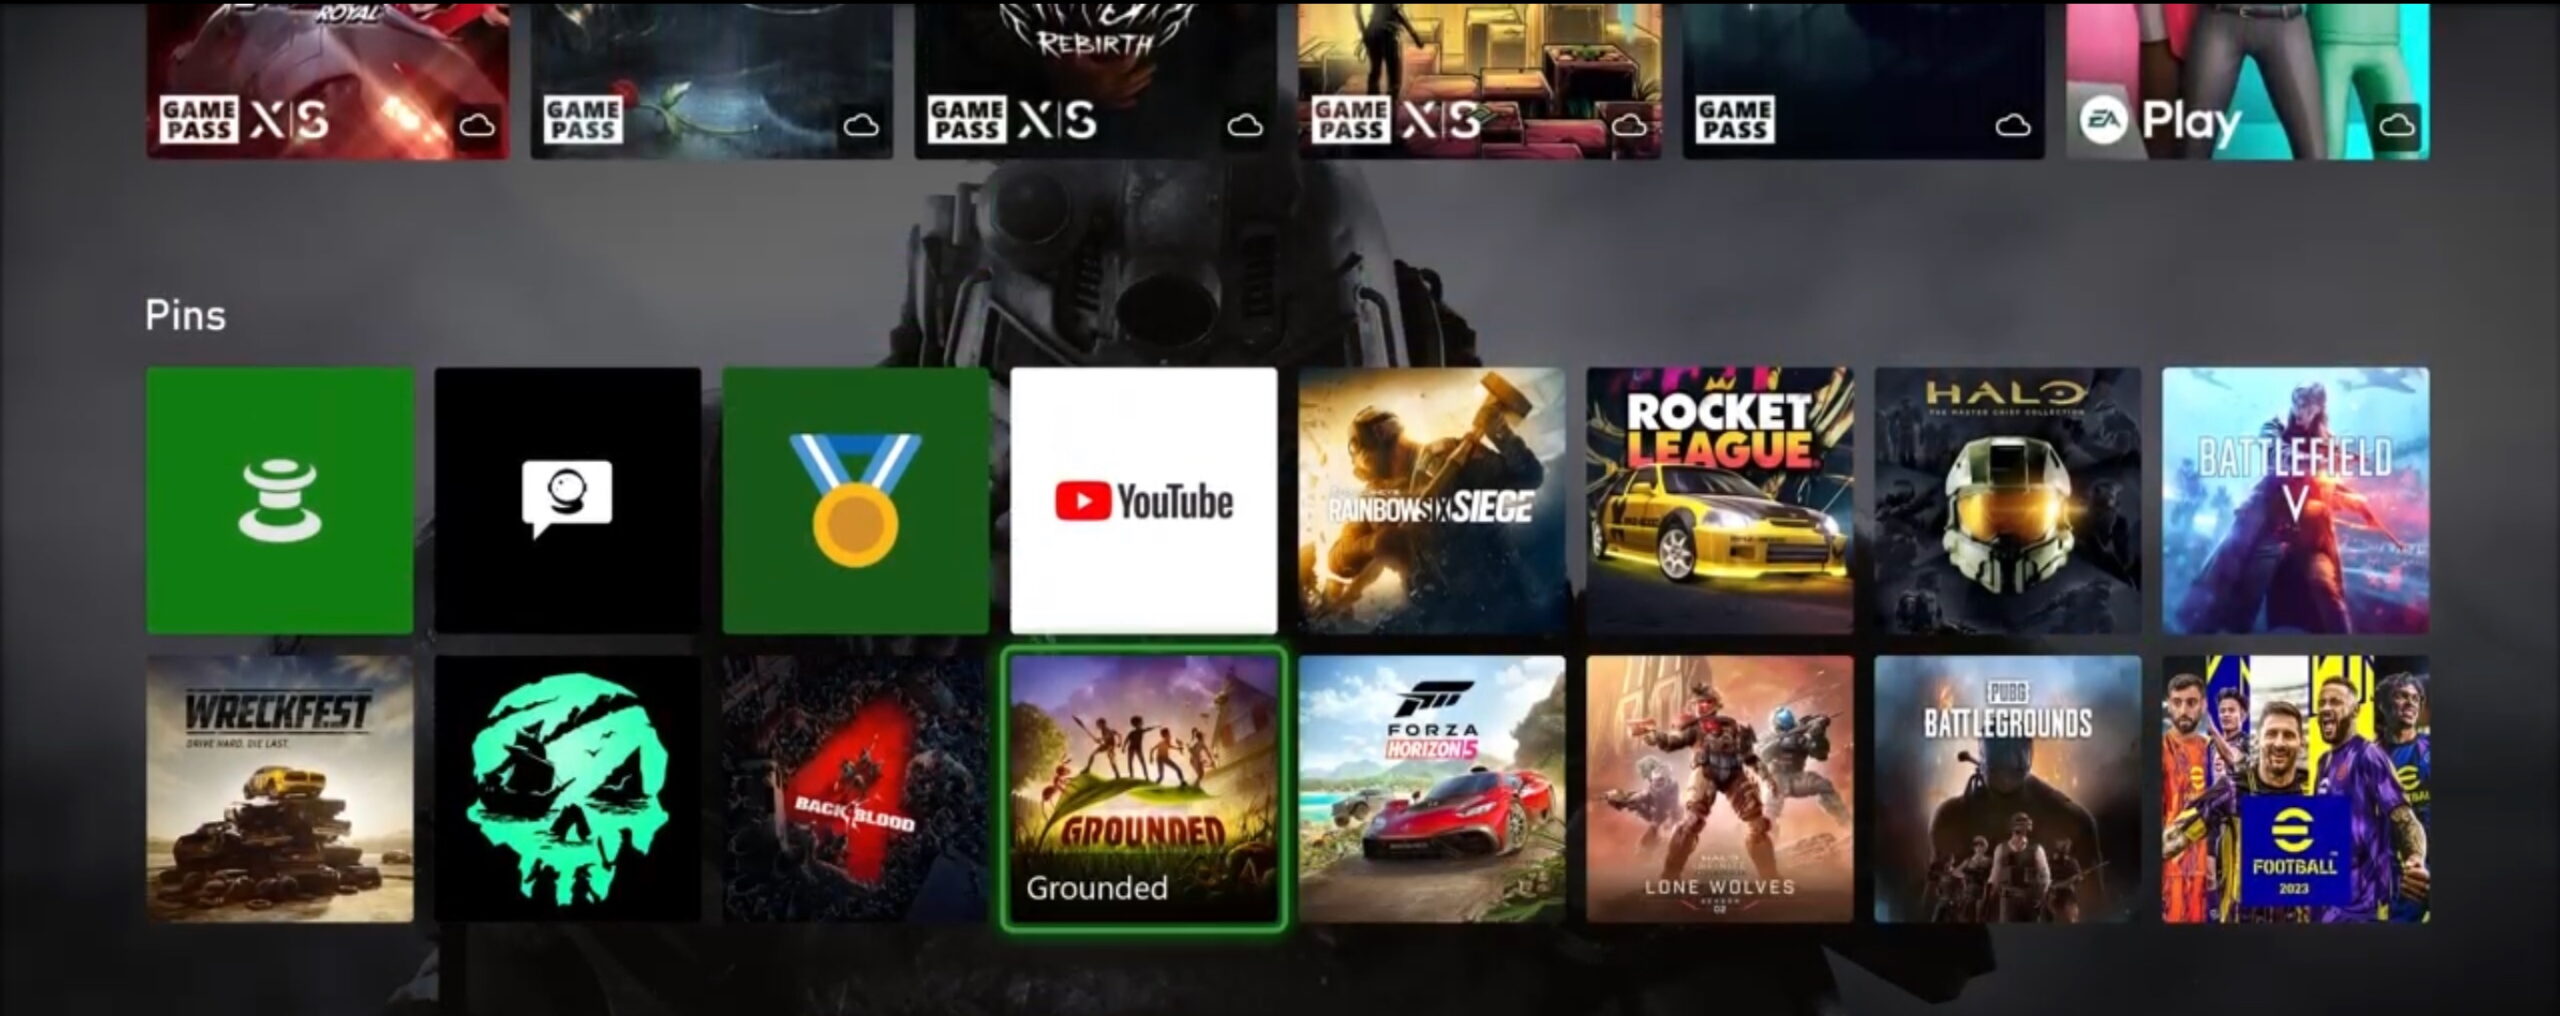 Microsoft внесла несколько изменений в новый интерфейс главного экрана консолей Xbox